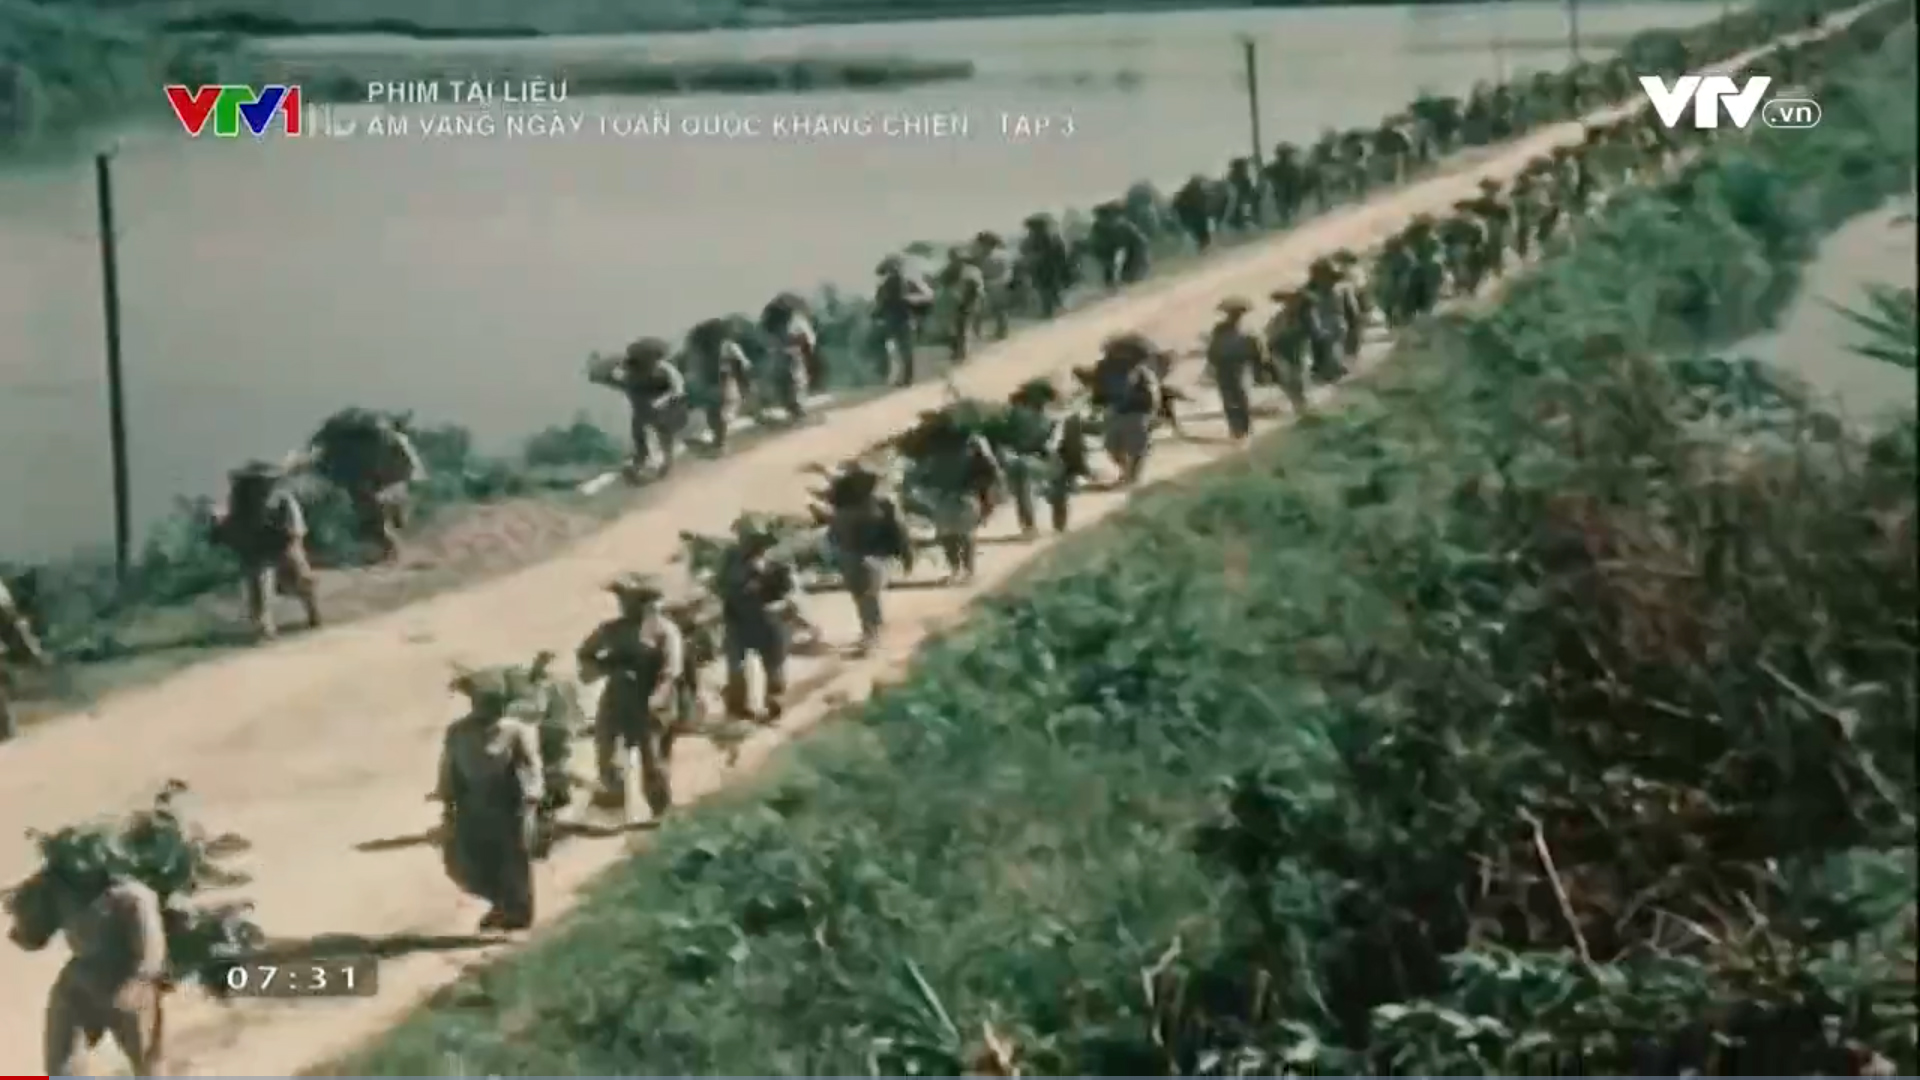 Phim tài liệu: Âm vang ngày Toàn quốc kháng chiến - Tập 3